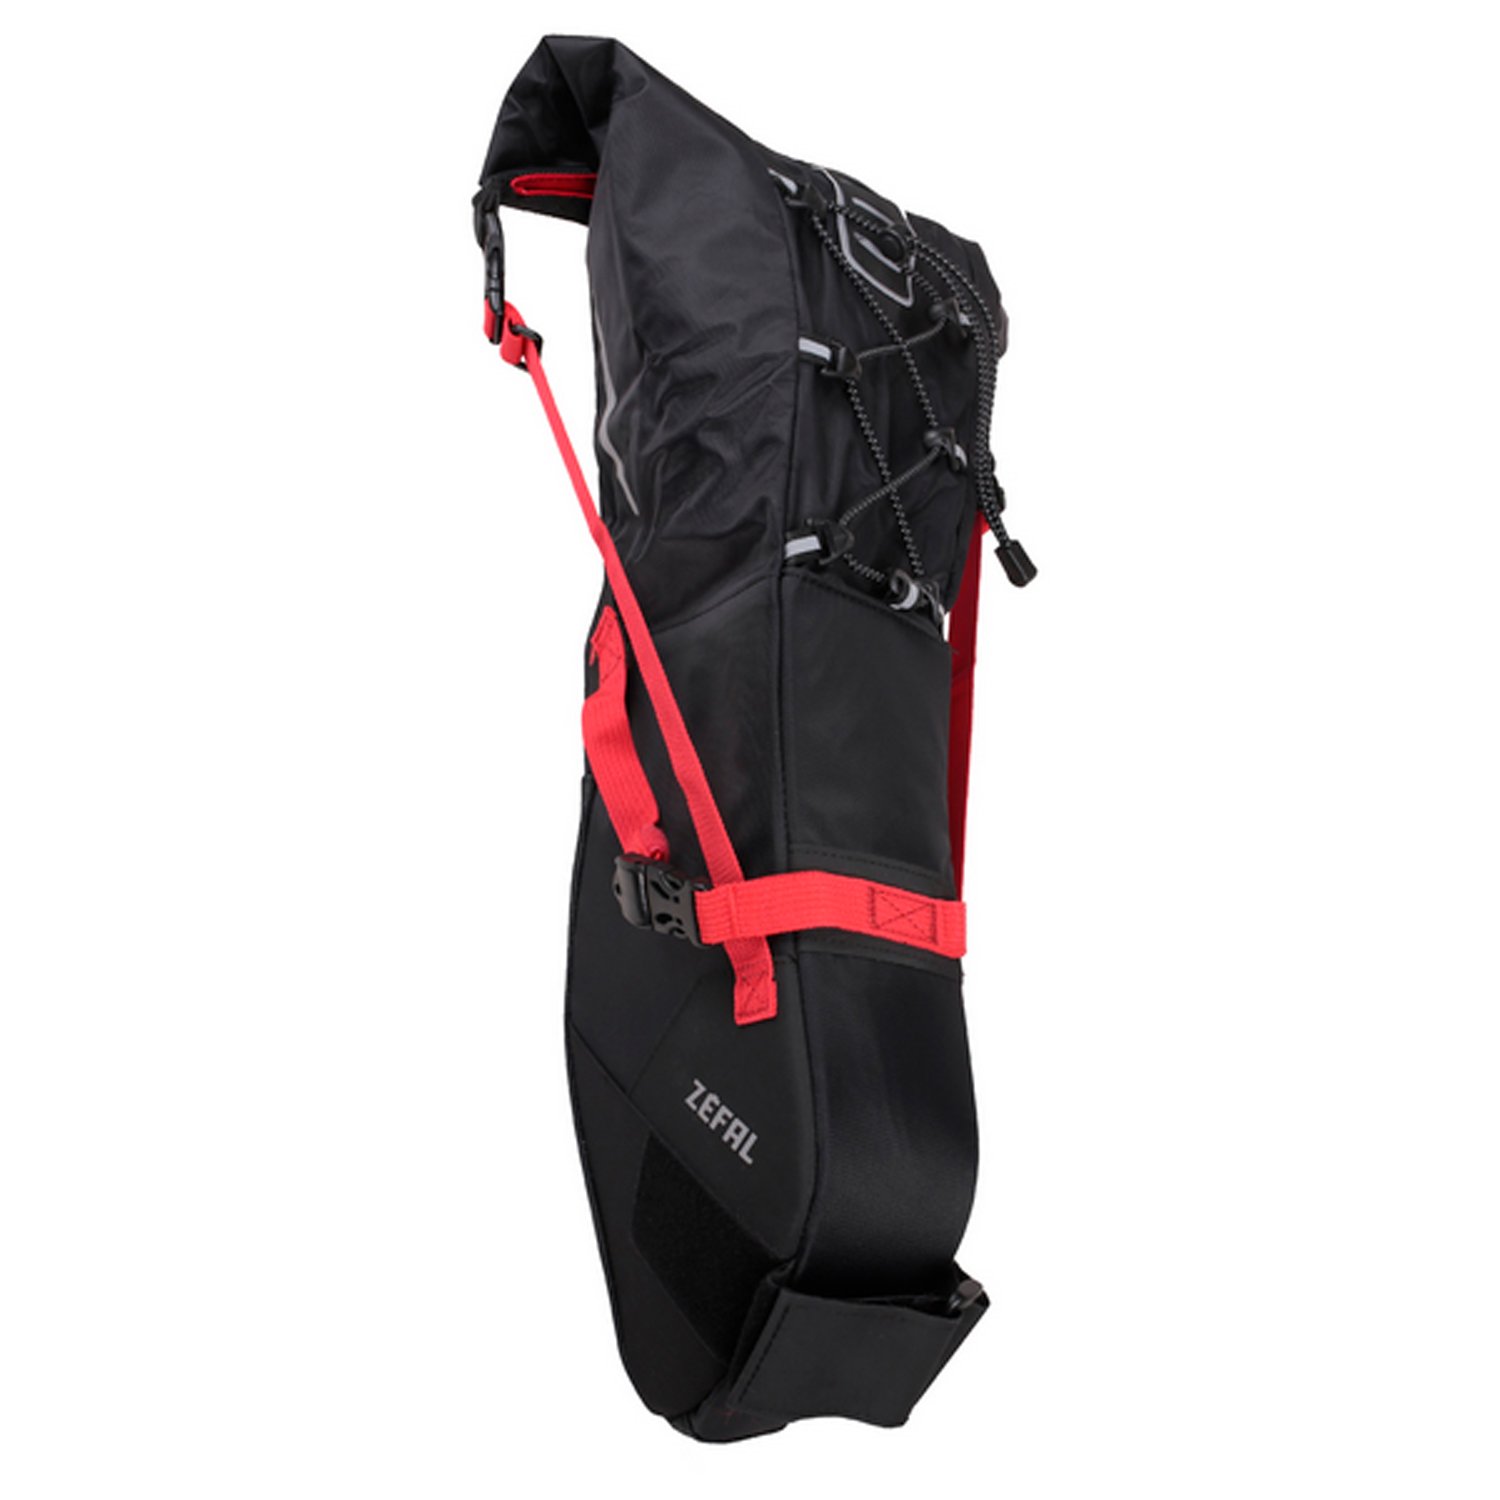 Сумка велосипедная Zefal Z Adventure R11 Saddle Bag, подседельная, объем от 5 до 11L, красный/черный, 2023, 7001 сумка велосипедная zefal iron pack 2 m ds saddle bag подседельная 0 9l 2023 7026